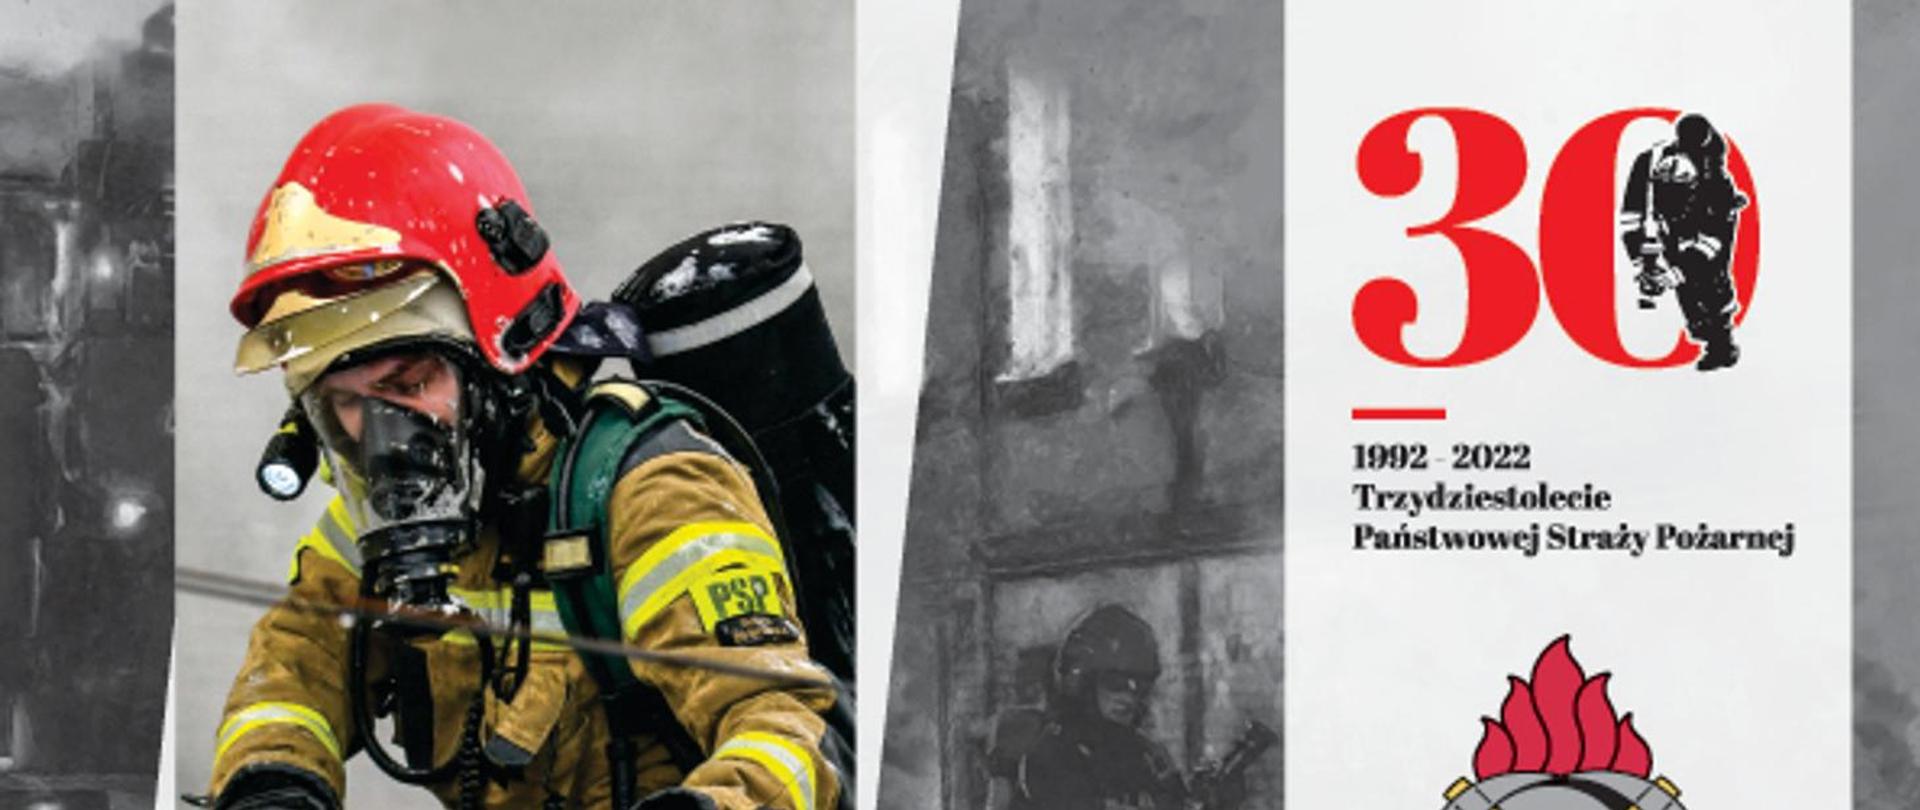 Zestawienie zdjec strażaków z prawej strony napis 30 1992-2022 Trzydziestolecie Państwowej Straży Pożarnej